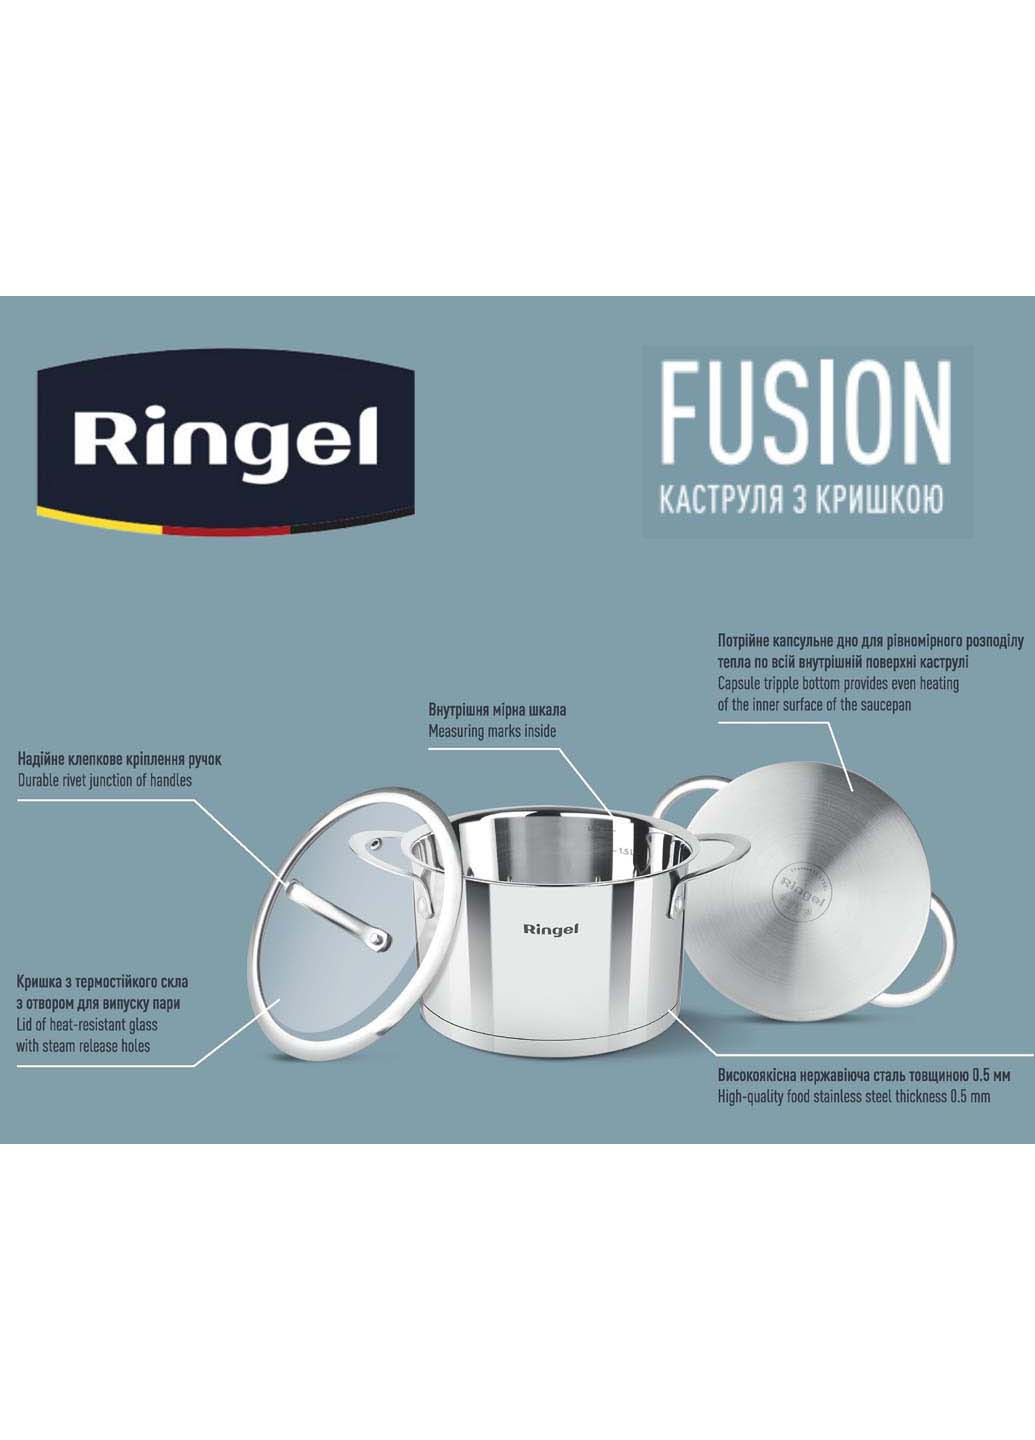 Кастрюля Fusion 16 см 1.9 л Ringel (278014500)